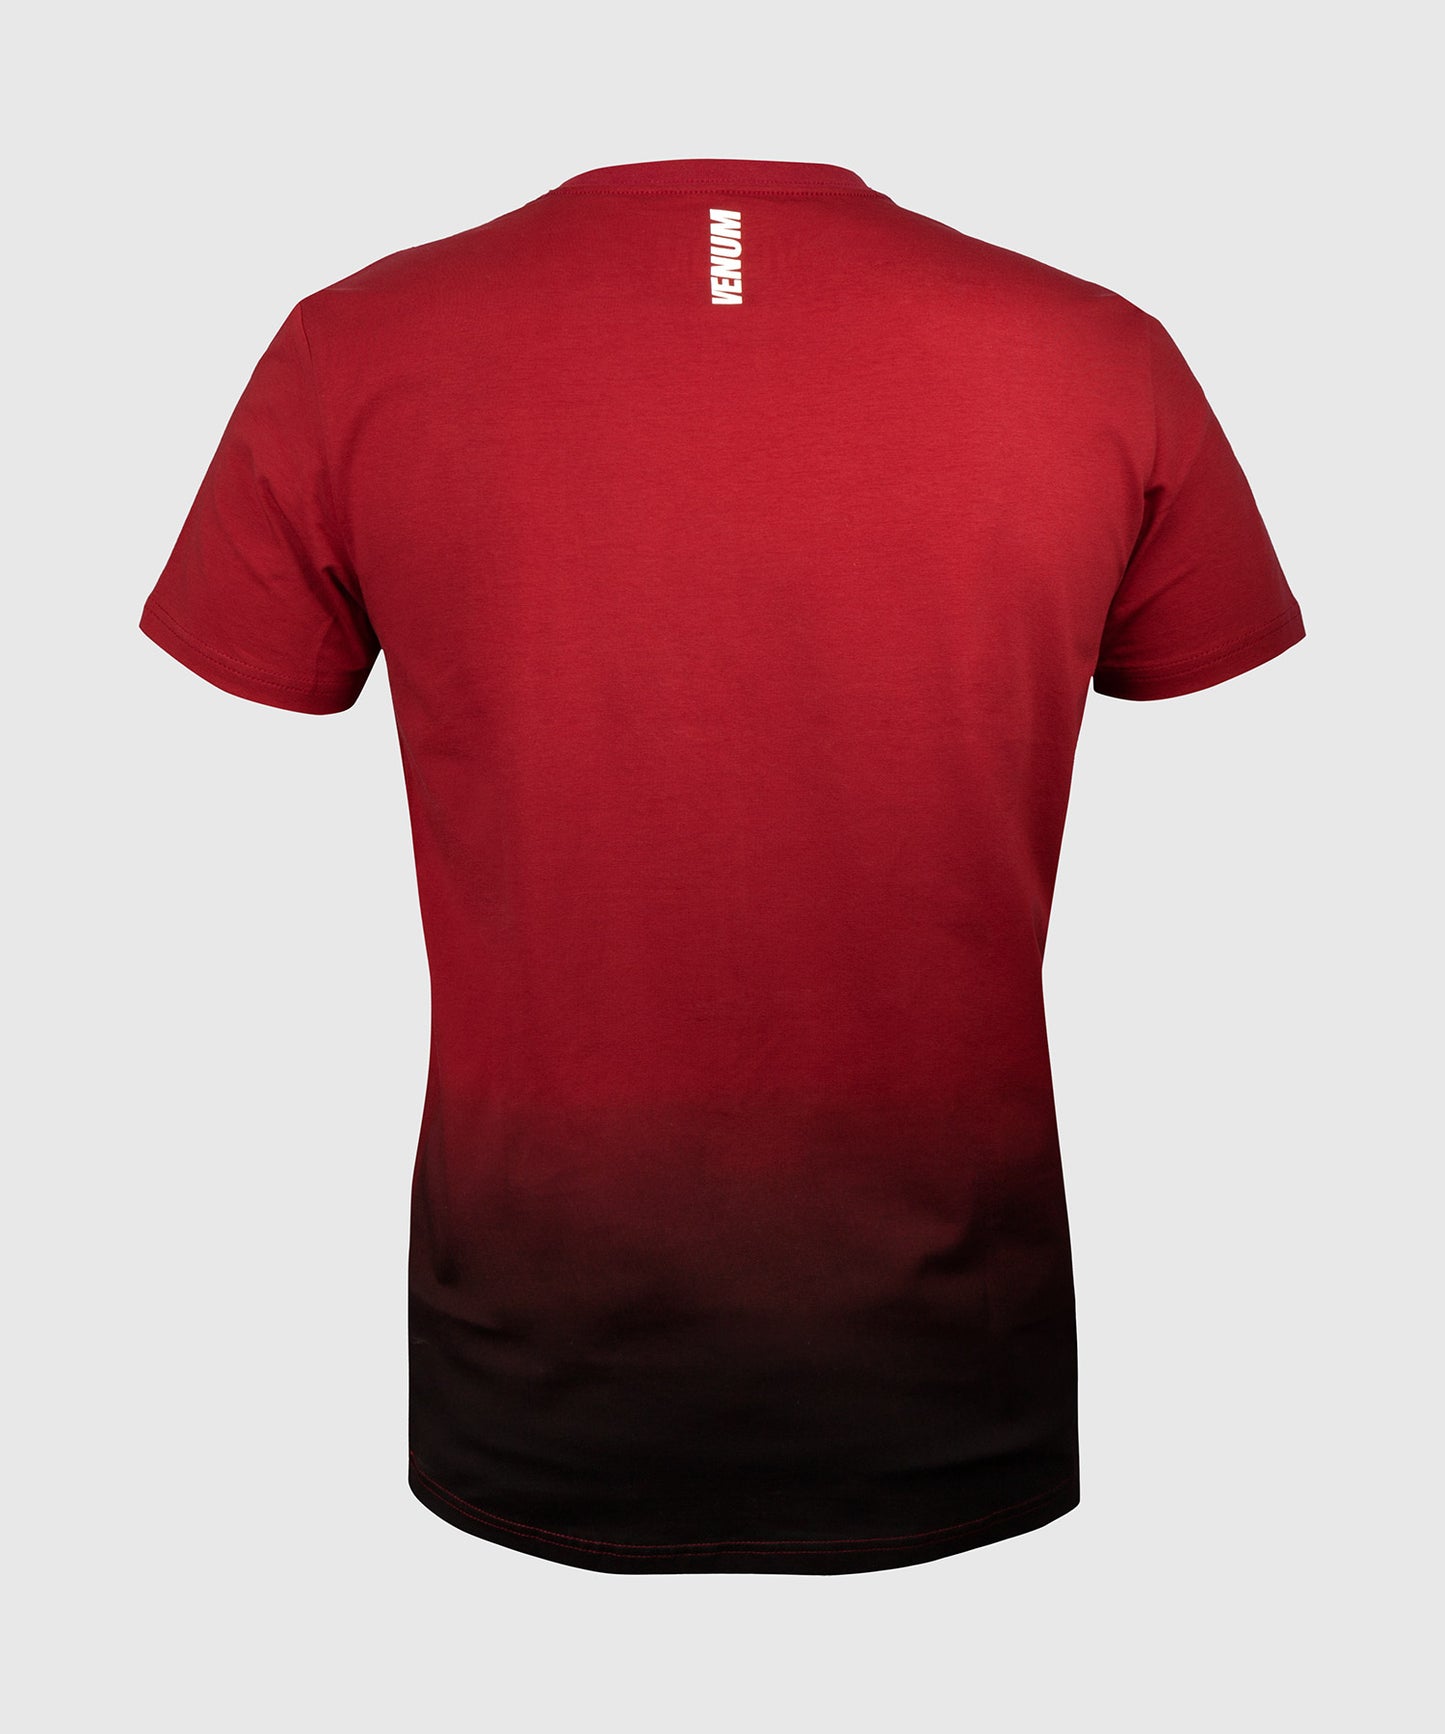 T-shirt  Muay Thai VT Venum - Rosso vino/Nero